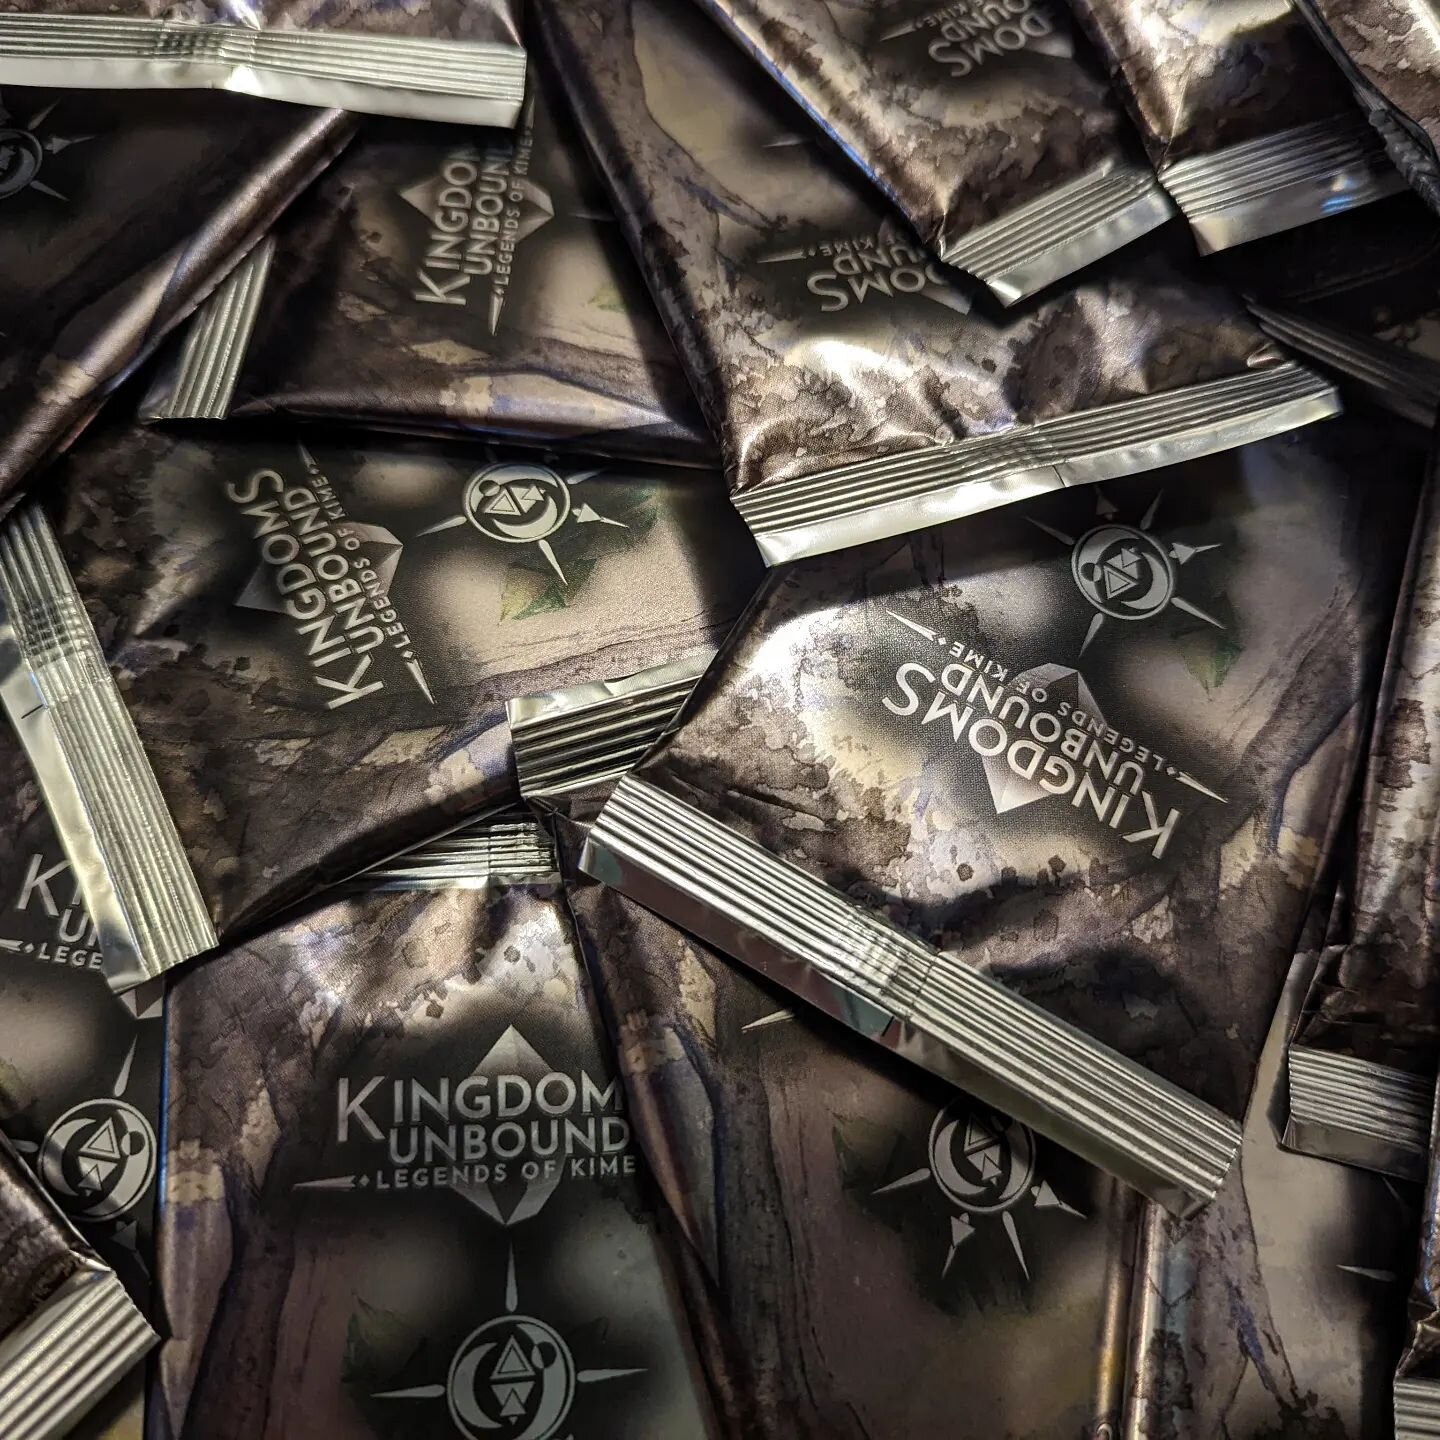 Shop — Kingdoms Unbound: Legends of Kime